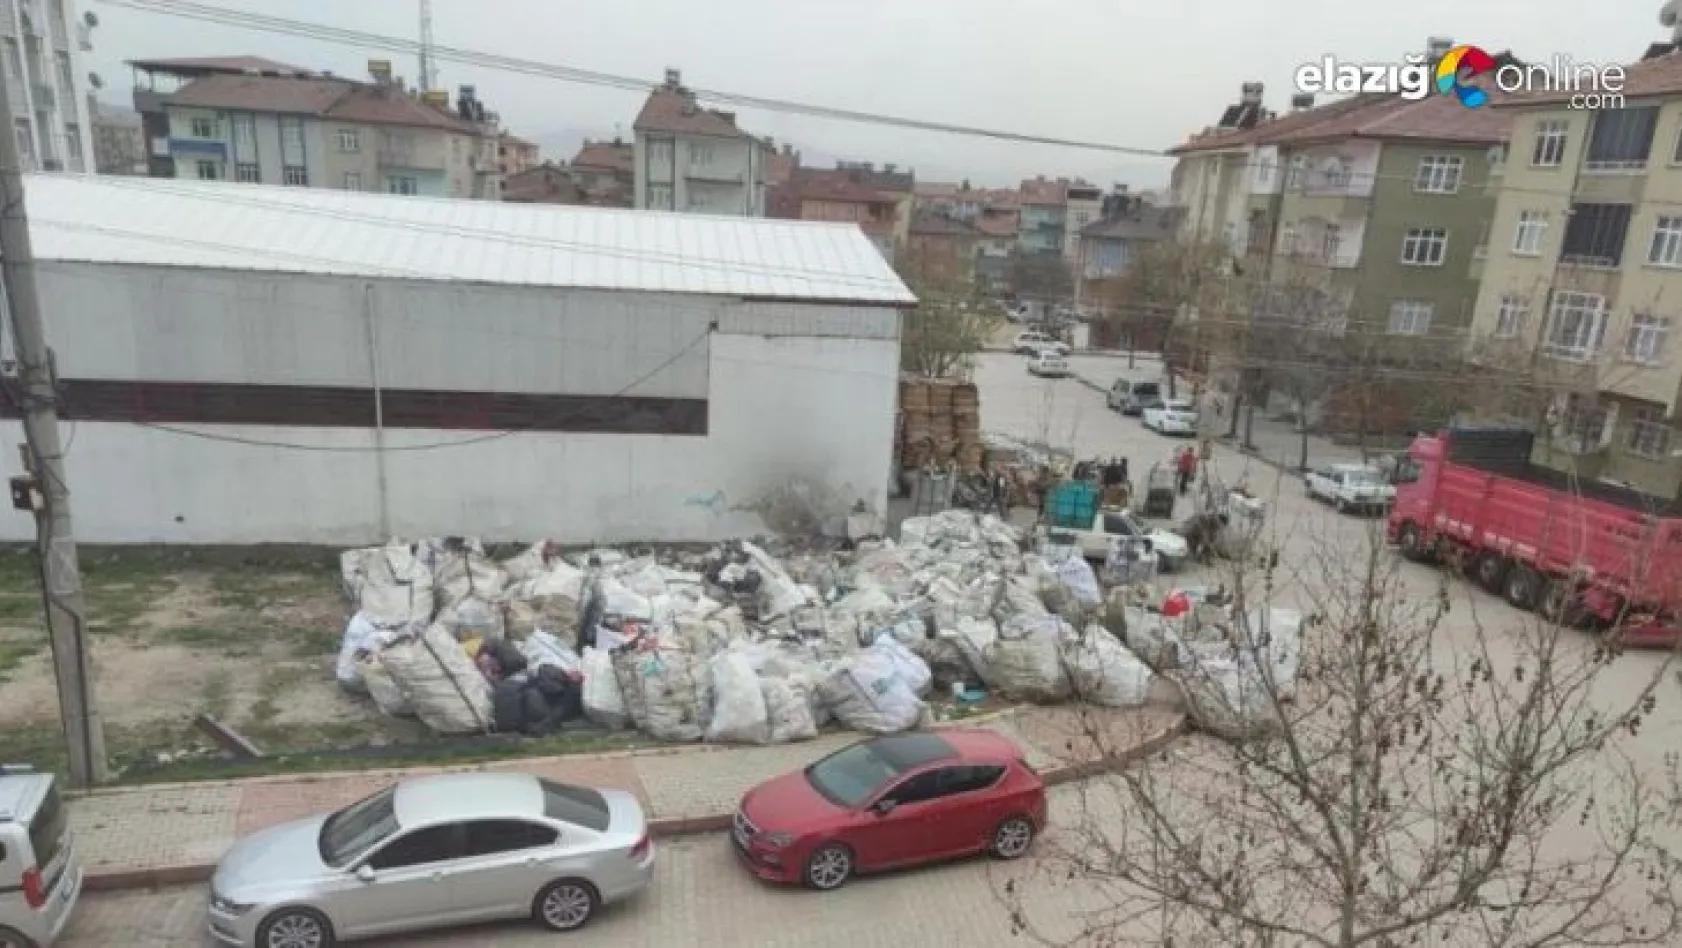 Kağıt toplayıcıları mahalleyi atık toplama merkezine çevirdi